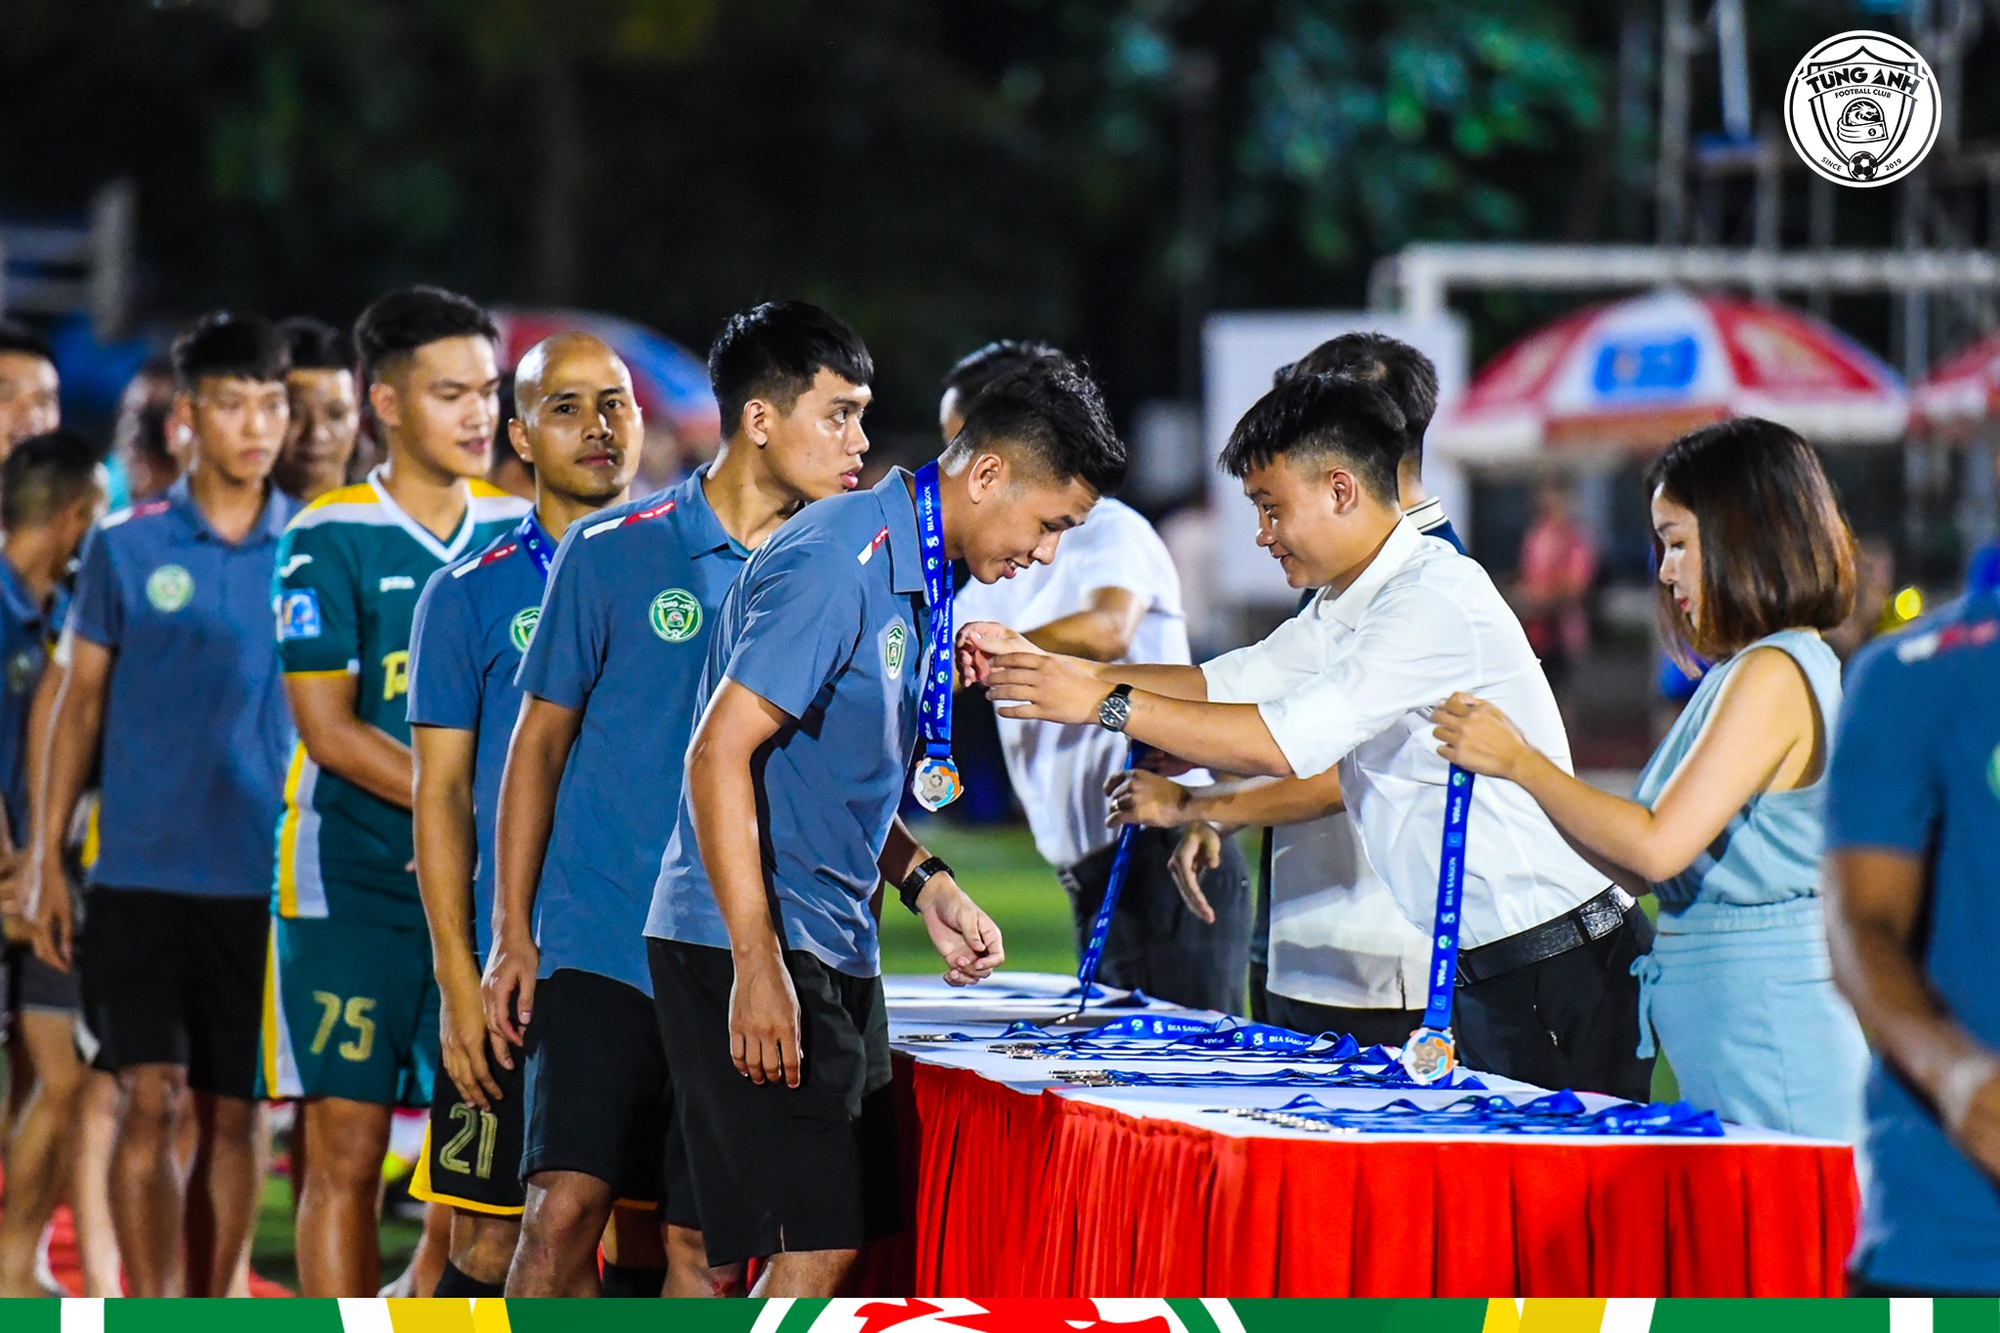 FC Tùng Anh đã giành được huy chương đồng tại giải bóng đá HPL-S10, qua đó có được tấm vé tham dự VPL-S4.